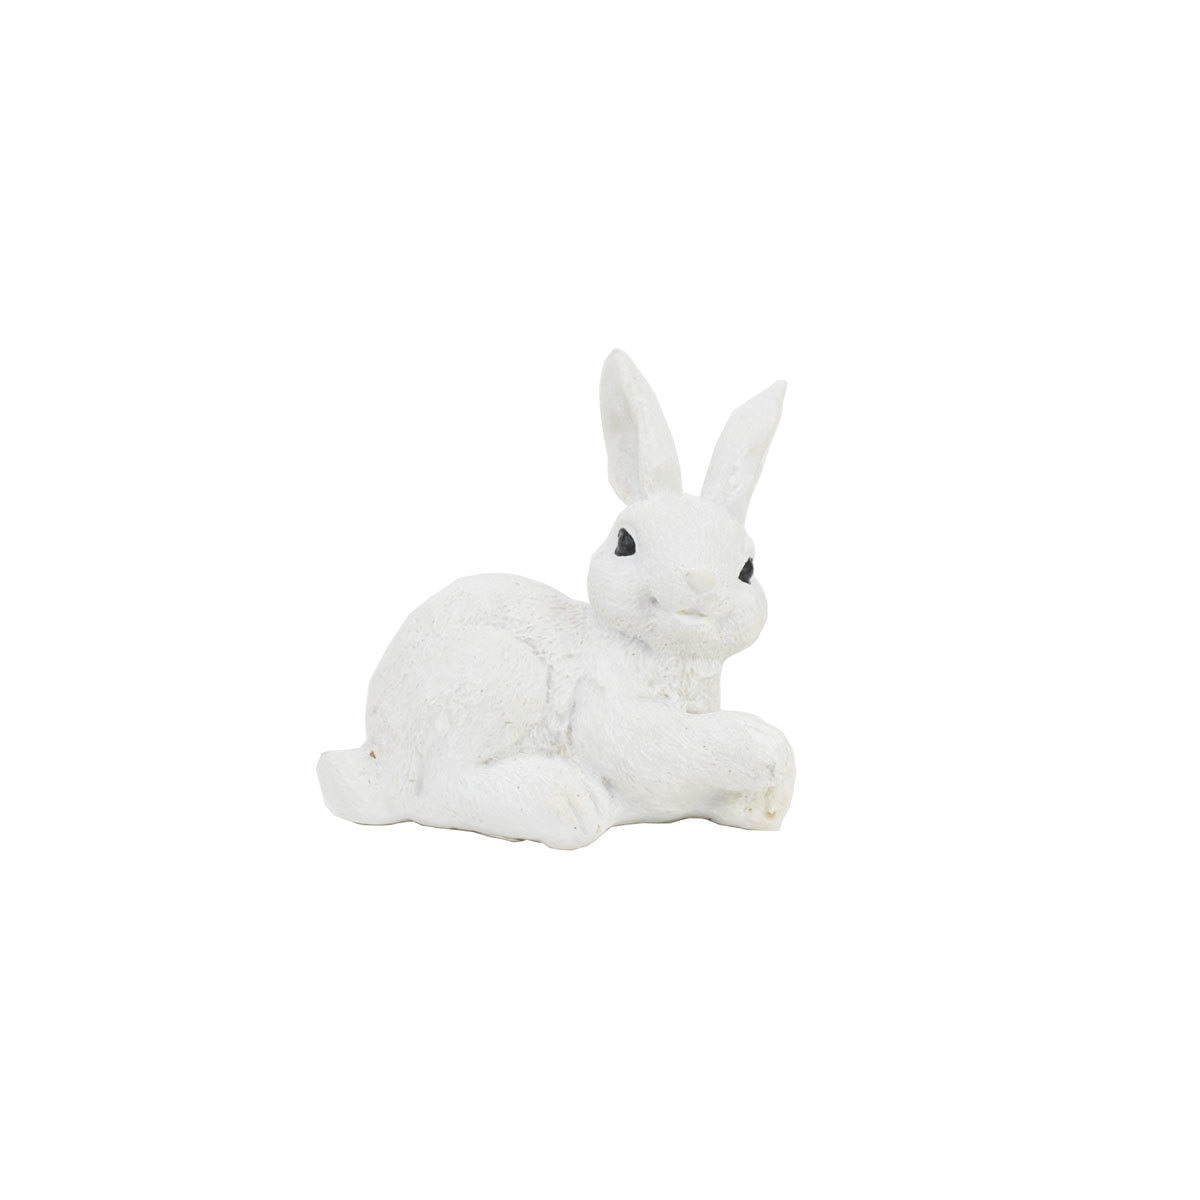 Смола кролик, белый кролик, сидя прямо, кролик, орнамент, кролик, Изделия ручной работы, интерьер, разные товары, орнамент, объект